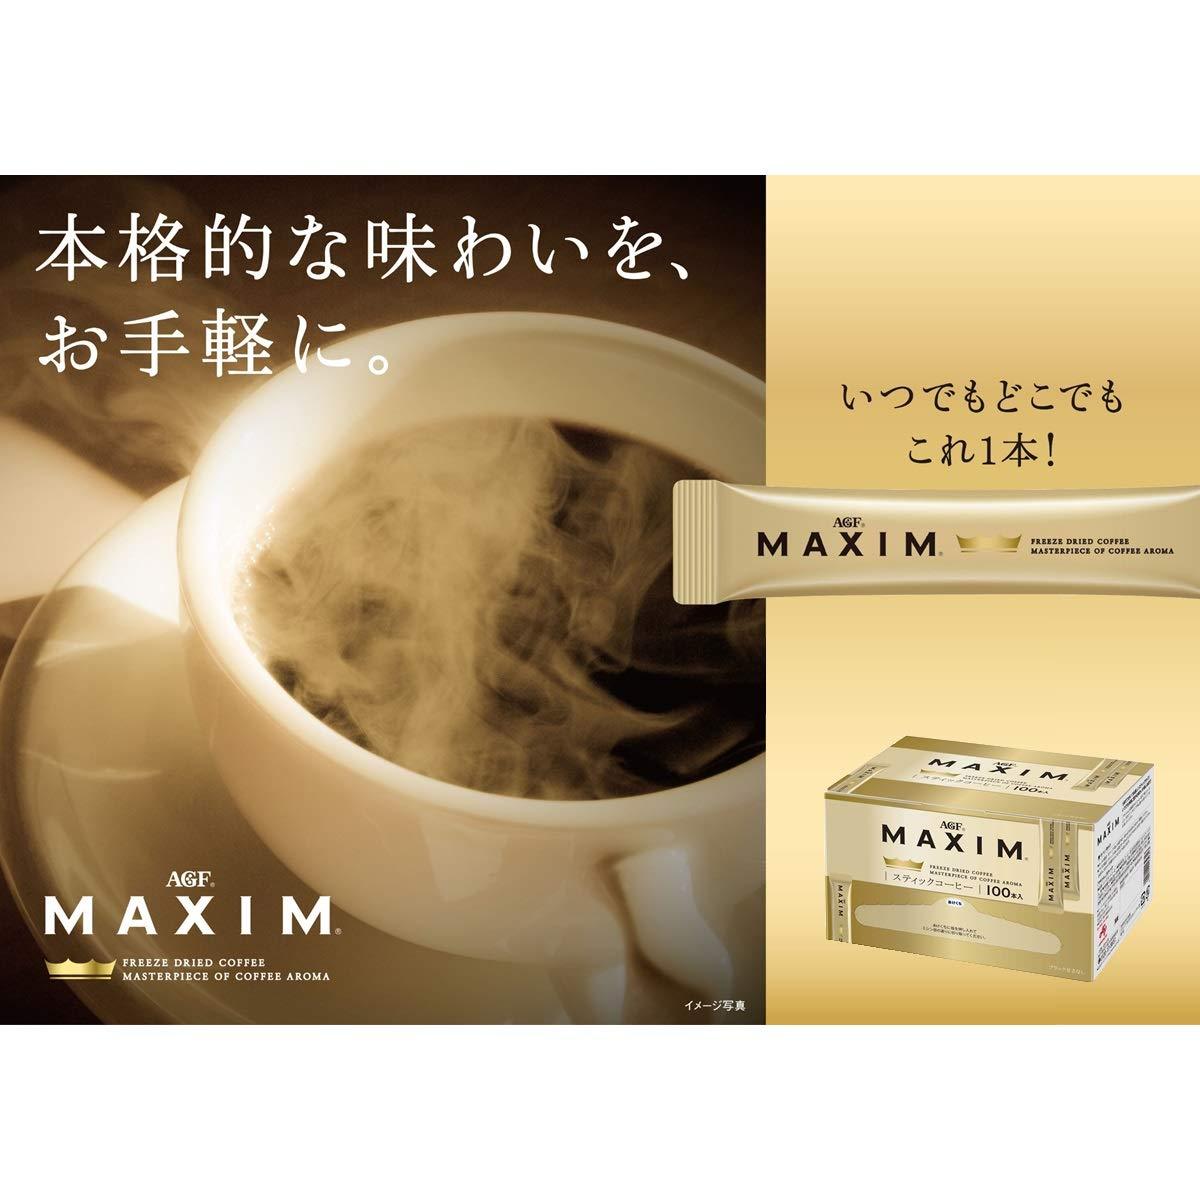 Inomata Microwavable Plastic Coffee Mug Ivory – Japanese Taste